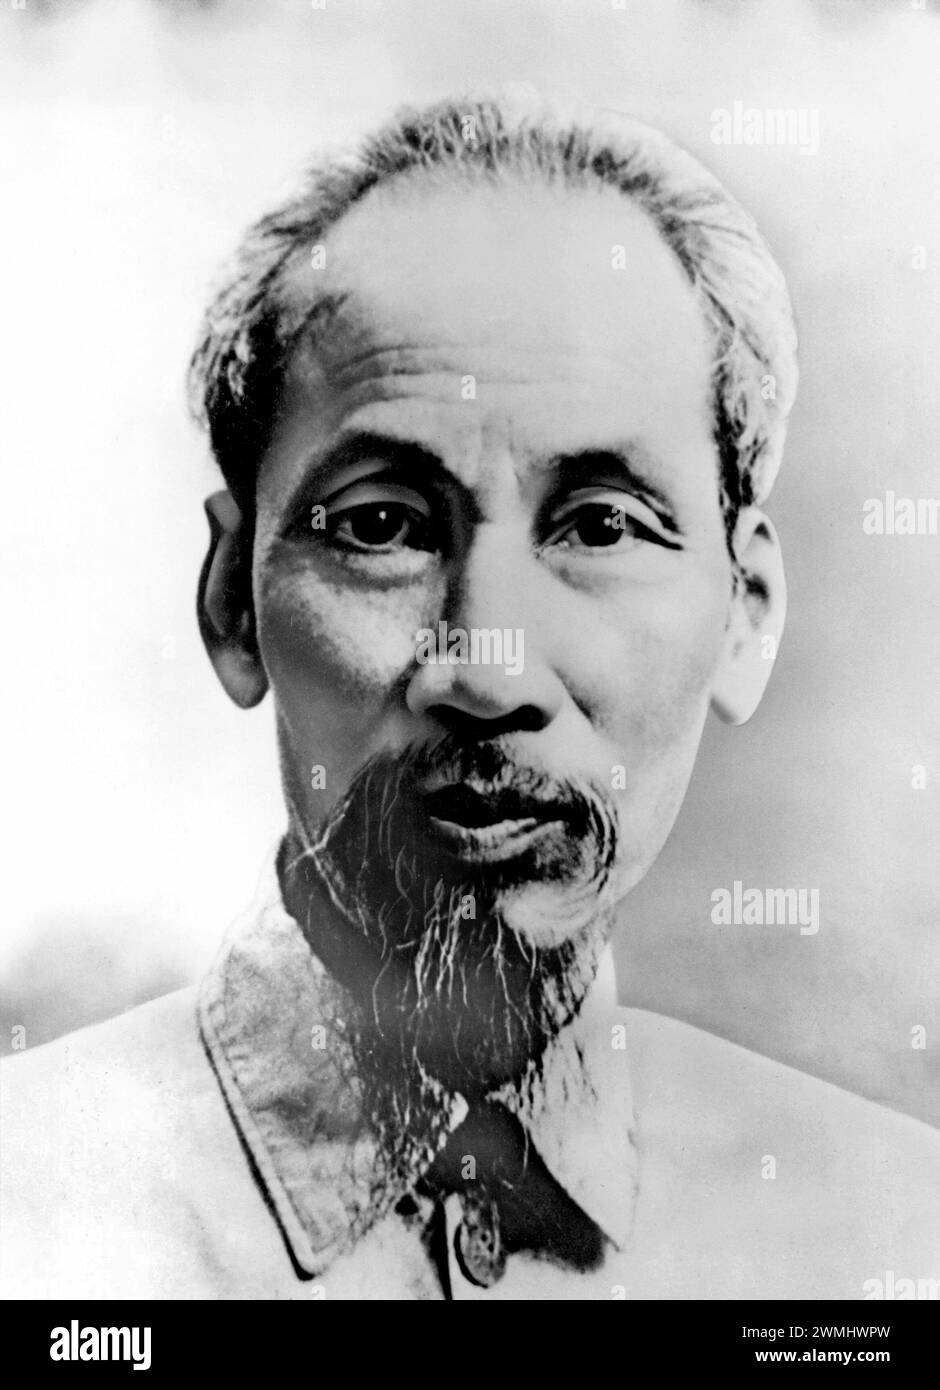 Ho Chi Minh. Portrait du révolutionnaire communiste vietnamien, Hồ Chí Minh (né Nguyễn Sinh Cung 1890-1969), v. 1946. Ho Chi Minh a été le 1er président de la République démocratique du Vietnam de 1945 à 1969. Banque D'Images